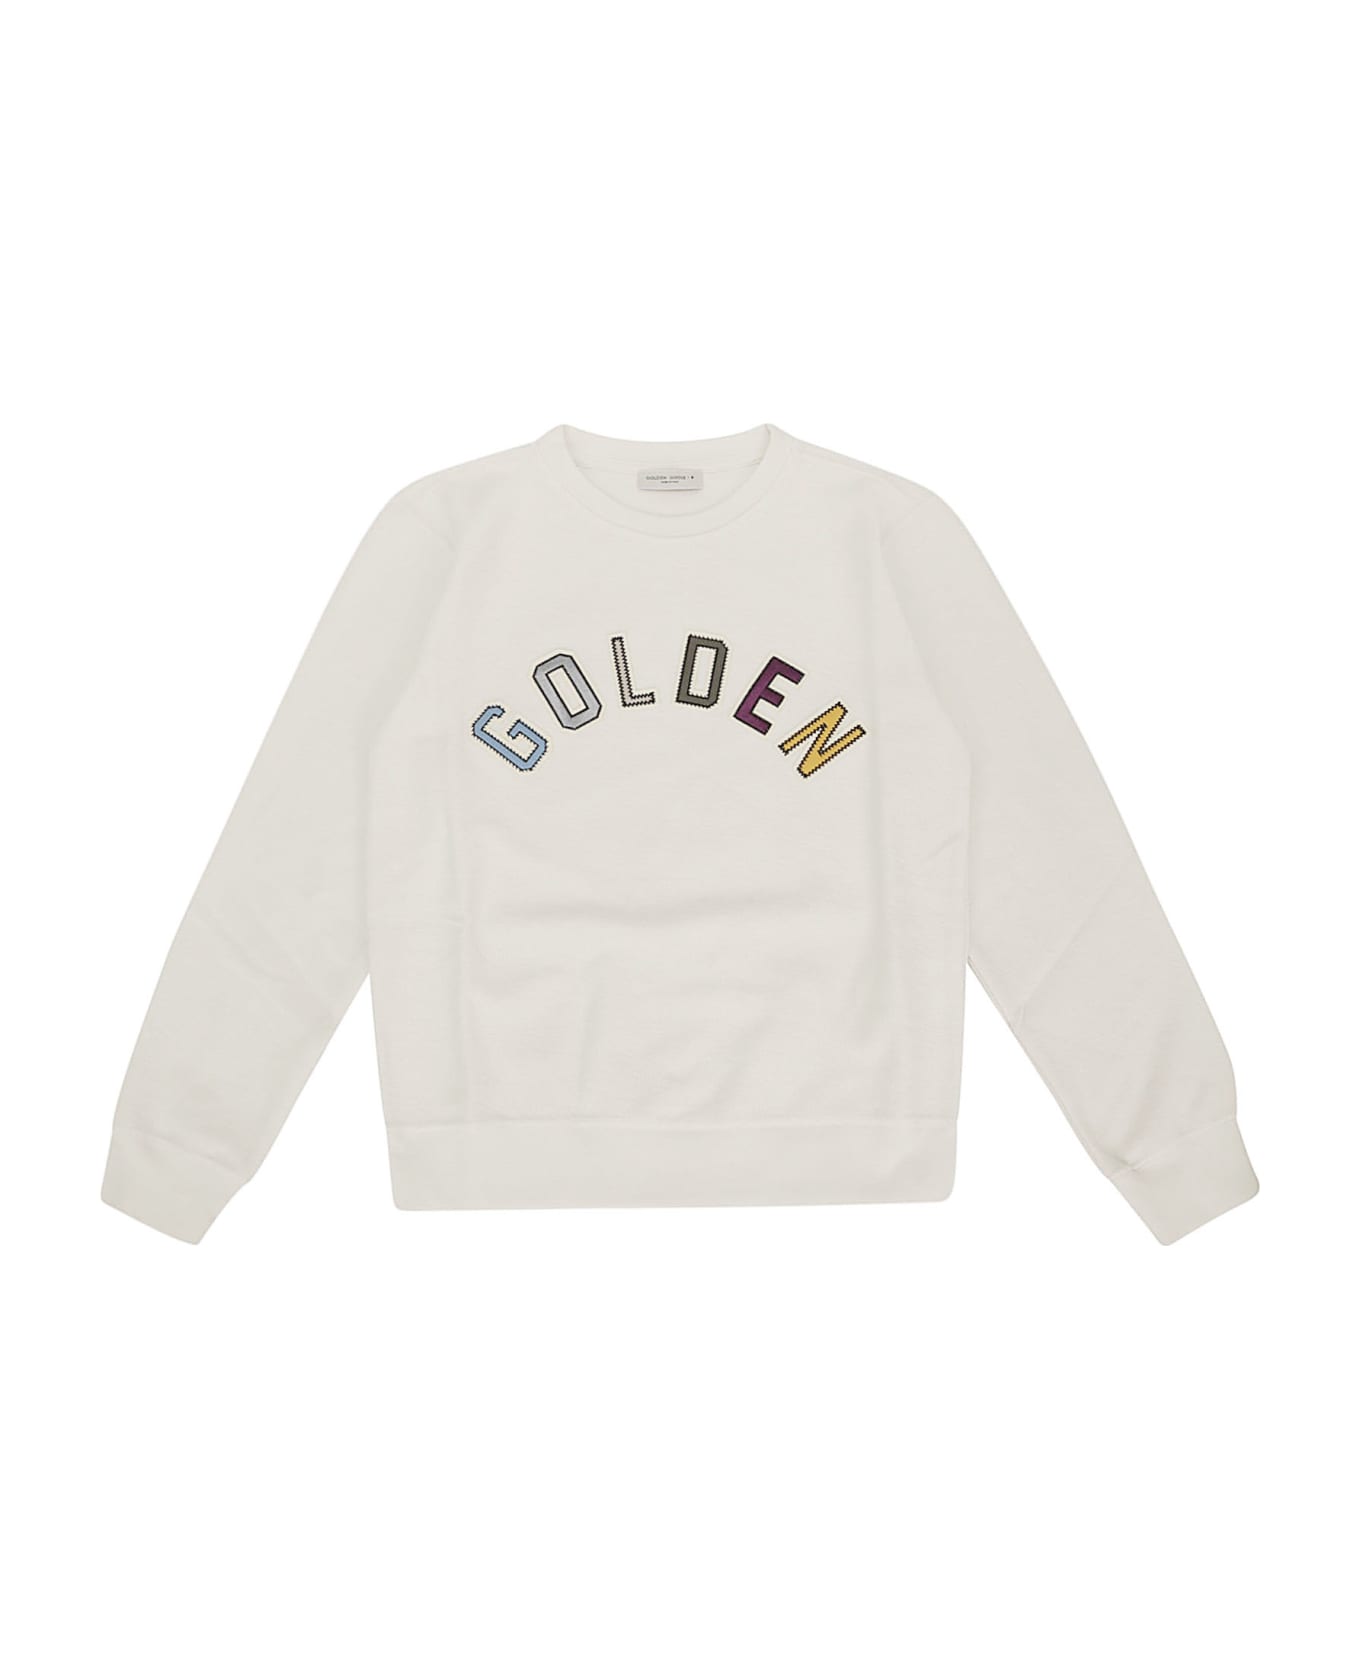 Golden Goose Journey/ Boy's Crewneck Regular Sweatshirt - ARTIC WOLF/ MULTICOLOR